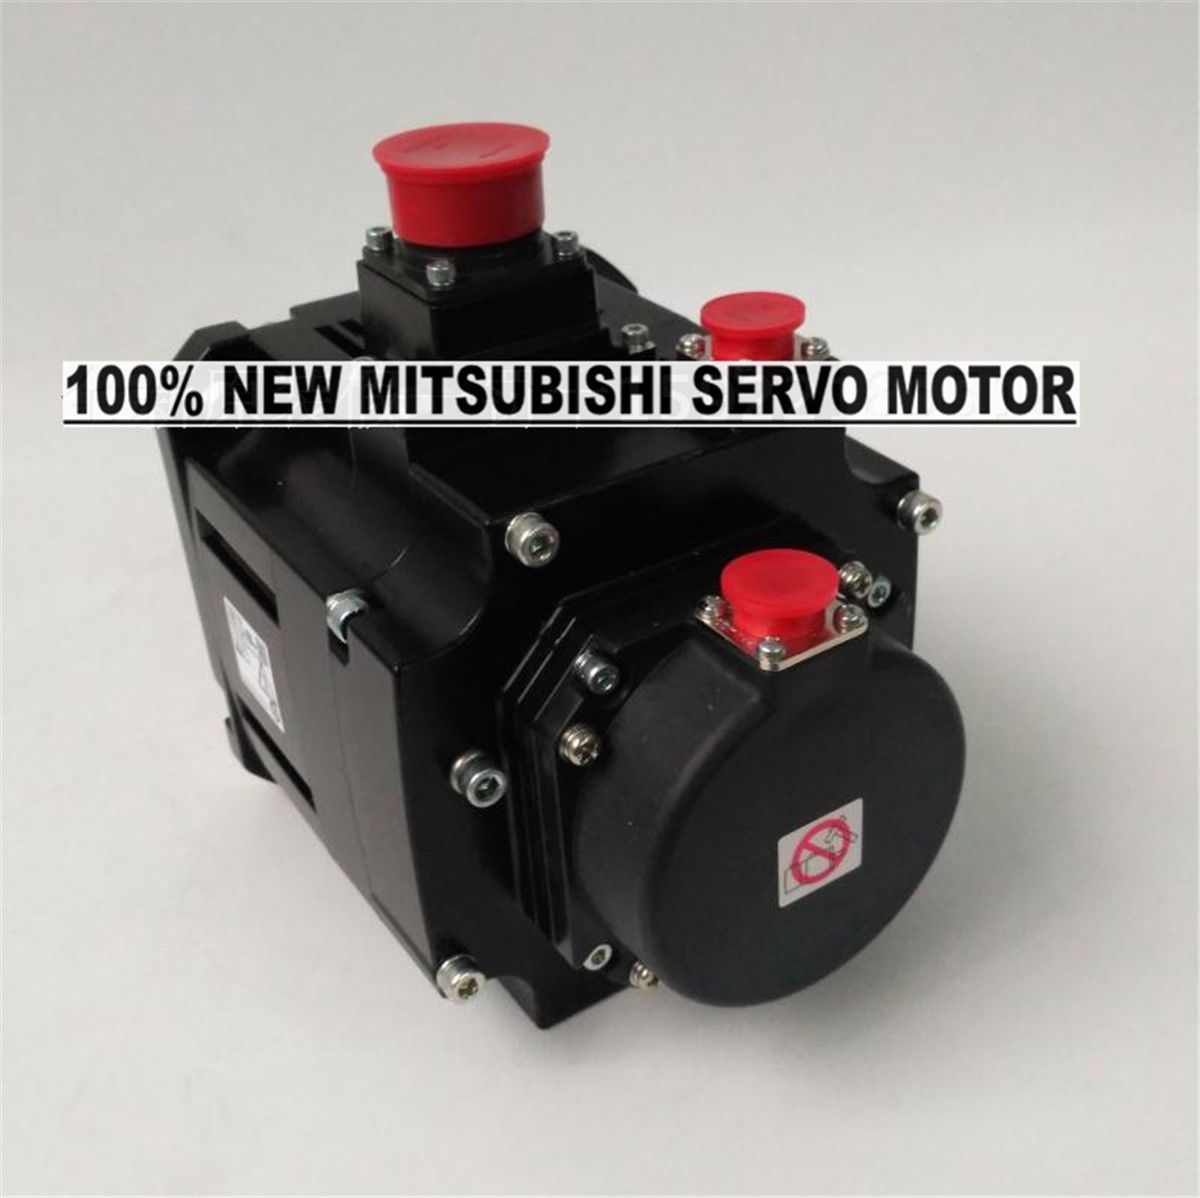 Brand New Mitsubishi Servo Motor HG-SR102BJ in box HGSR102BJ